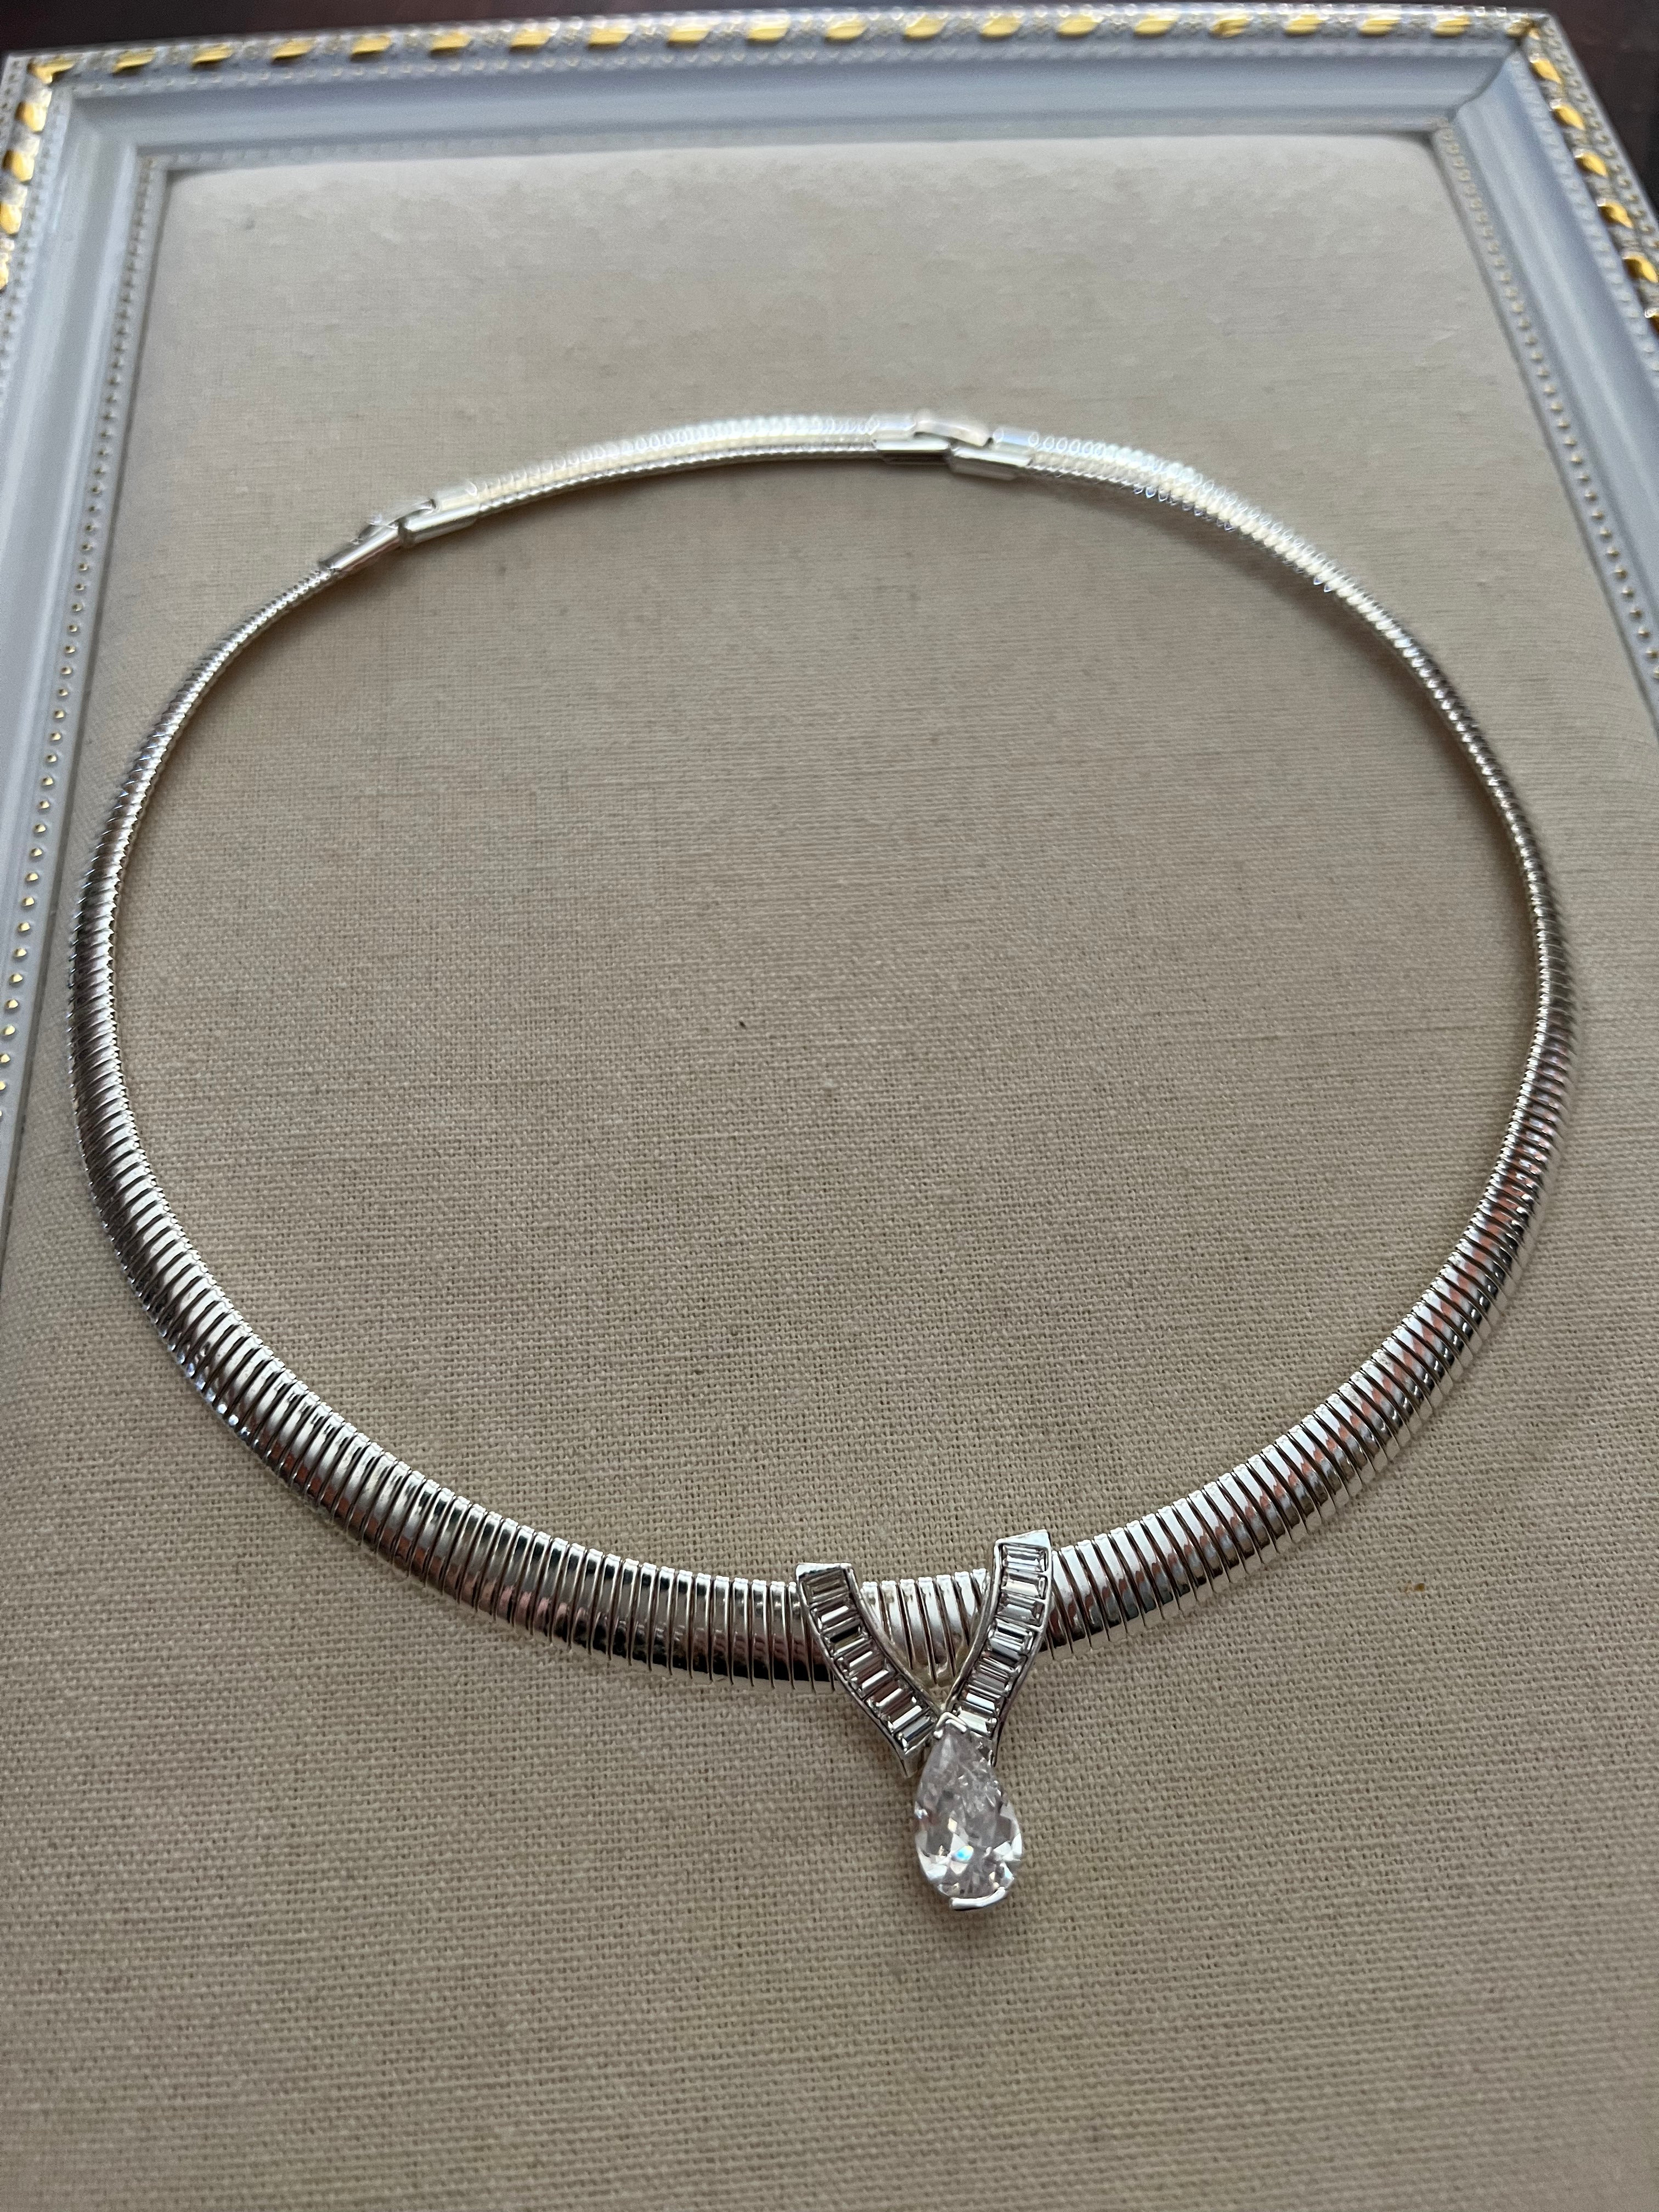 Vintage Silver Crystal Necklace